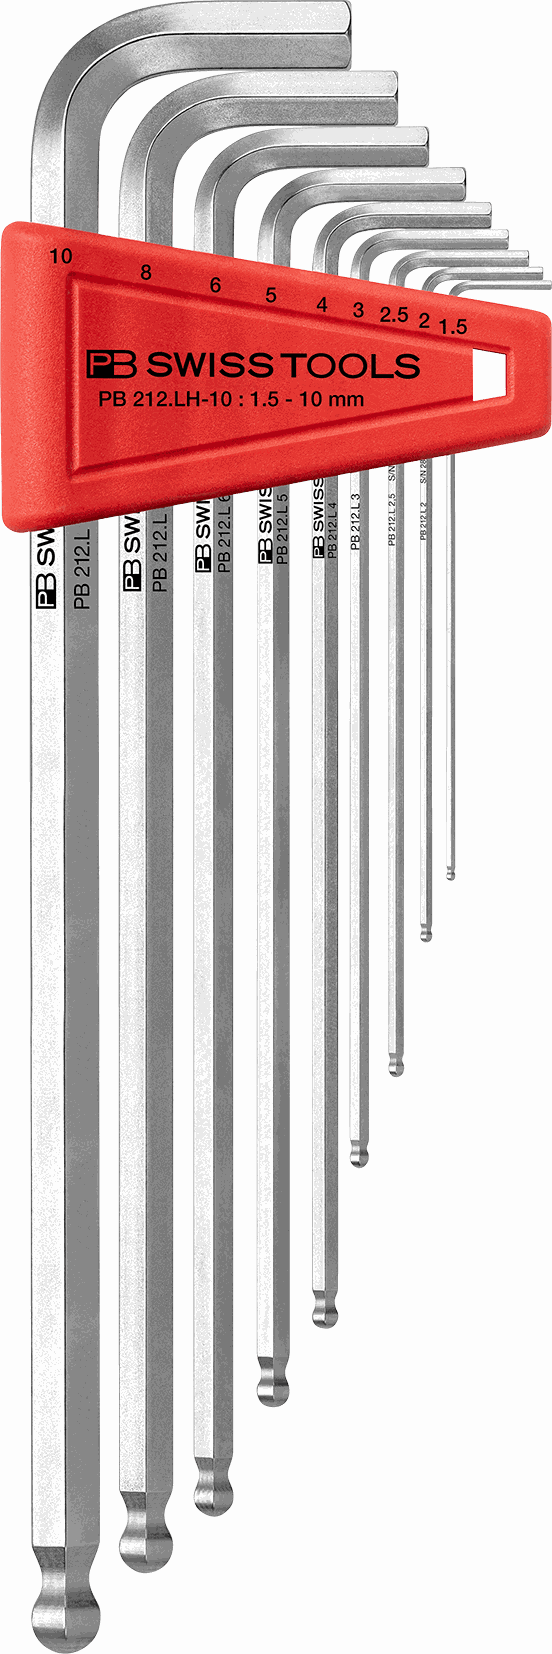 PB Kugelkopf-Stiftschlüssel-Satz, Lang PB 212 LH-10, 9-tlg., 1.5 - 10 mm - Schraubenzieher